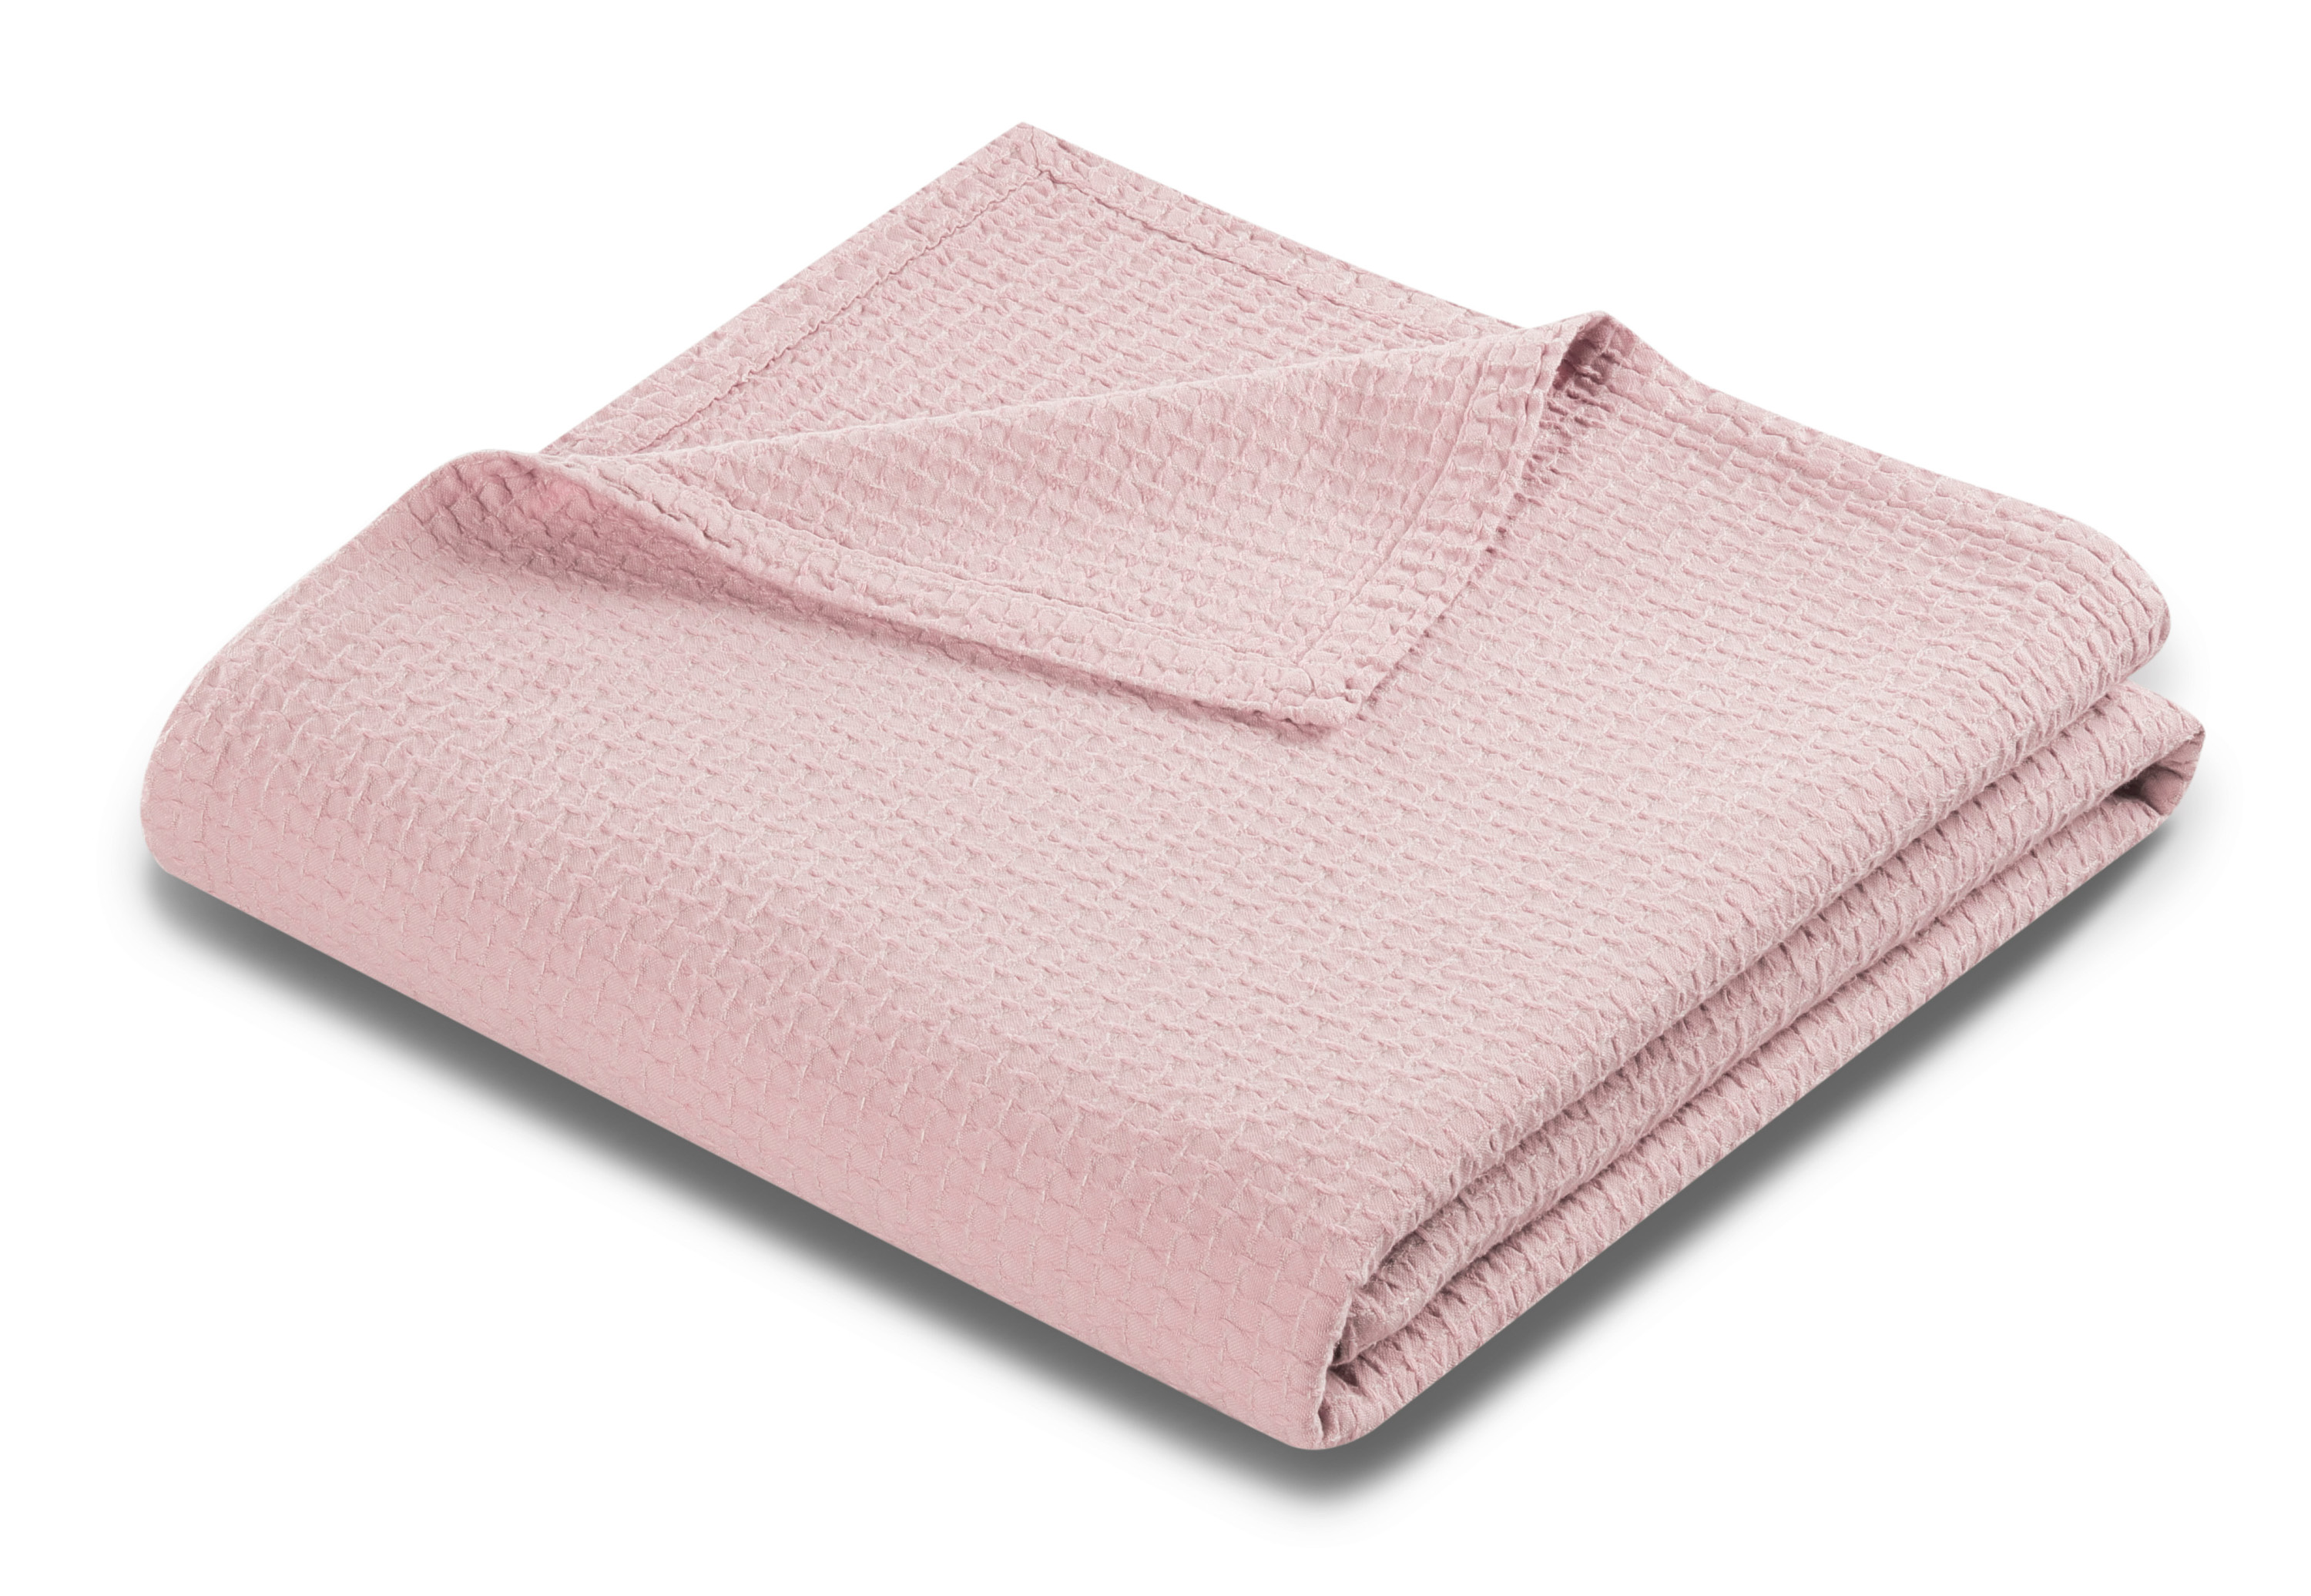 Leichter Bettüberwurf "Ruffle rose" mit Struktur-Muster in rosa 220x240 cm